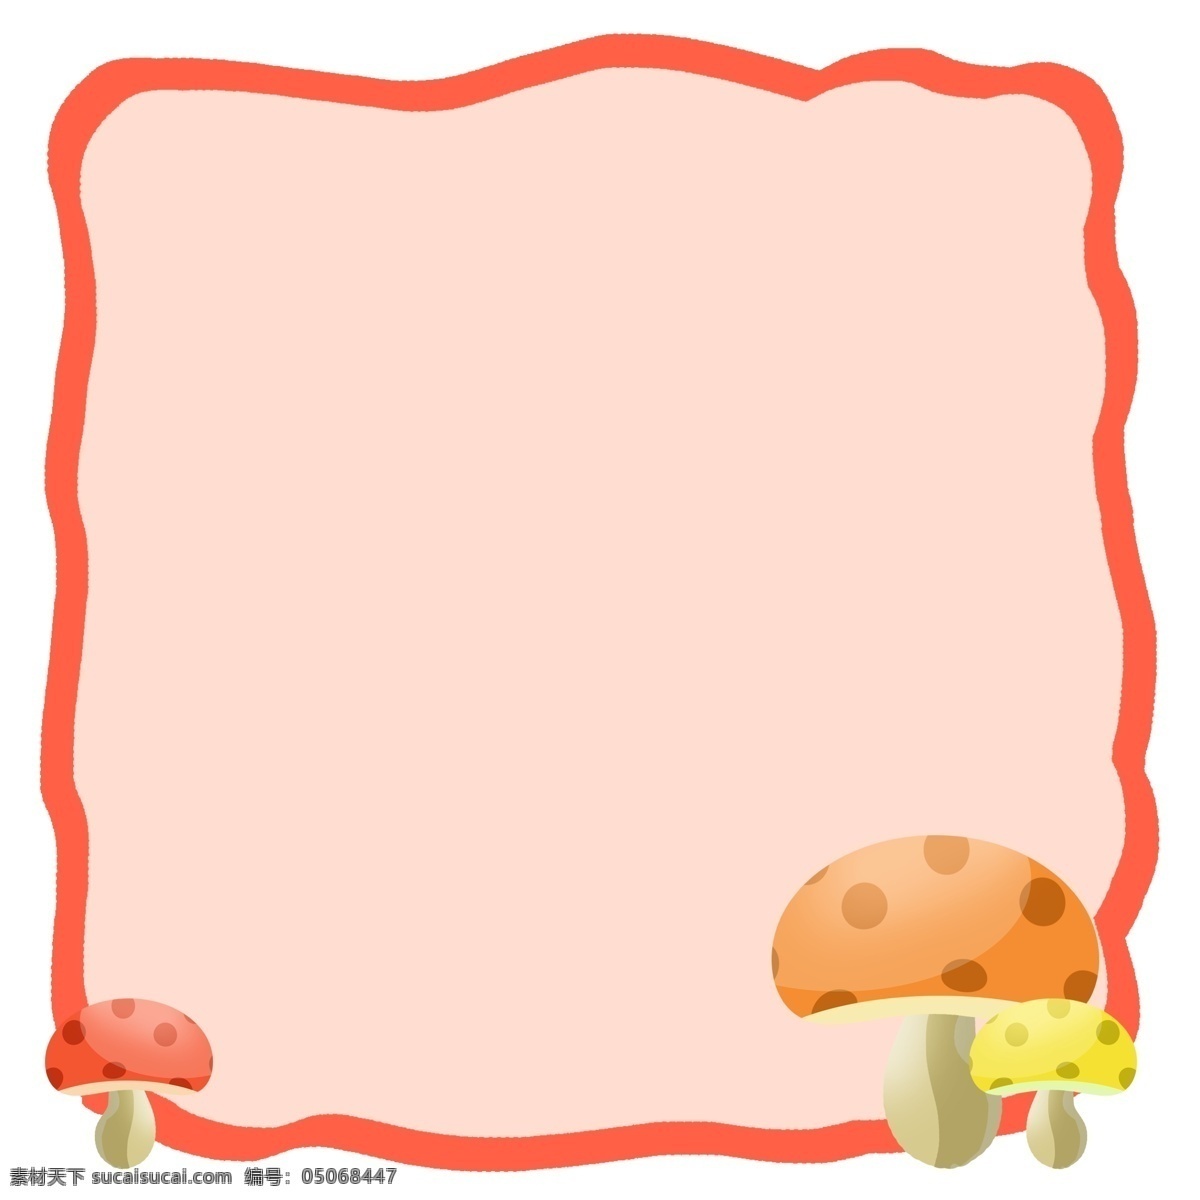 卡通 蘑菇 边框 插画 蘑菇边框 卡通边框 蘑菇边框插画 可爱蘑菇 红色边框 可爱边框 可爱蘑菇边框